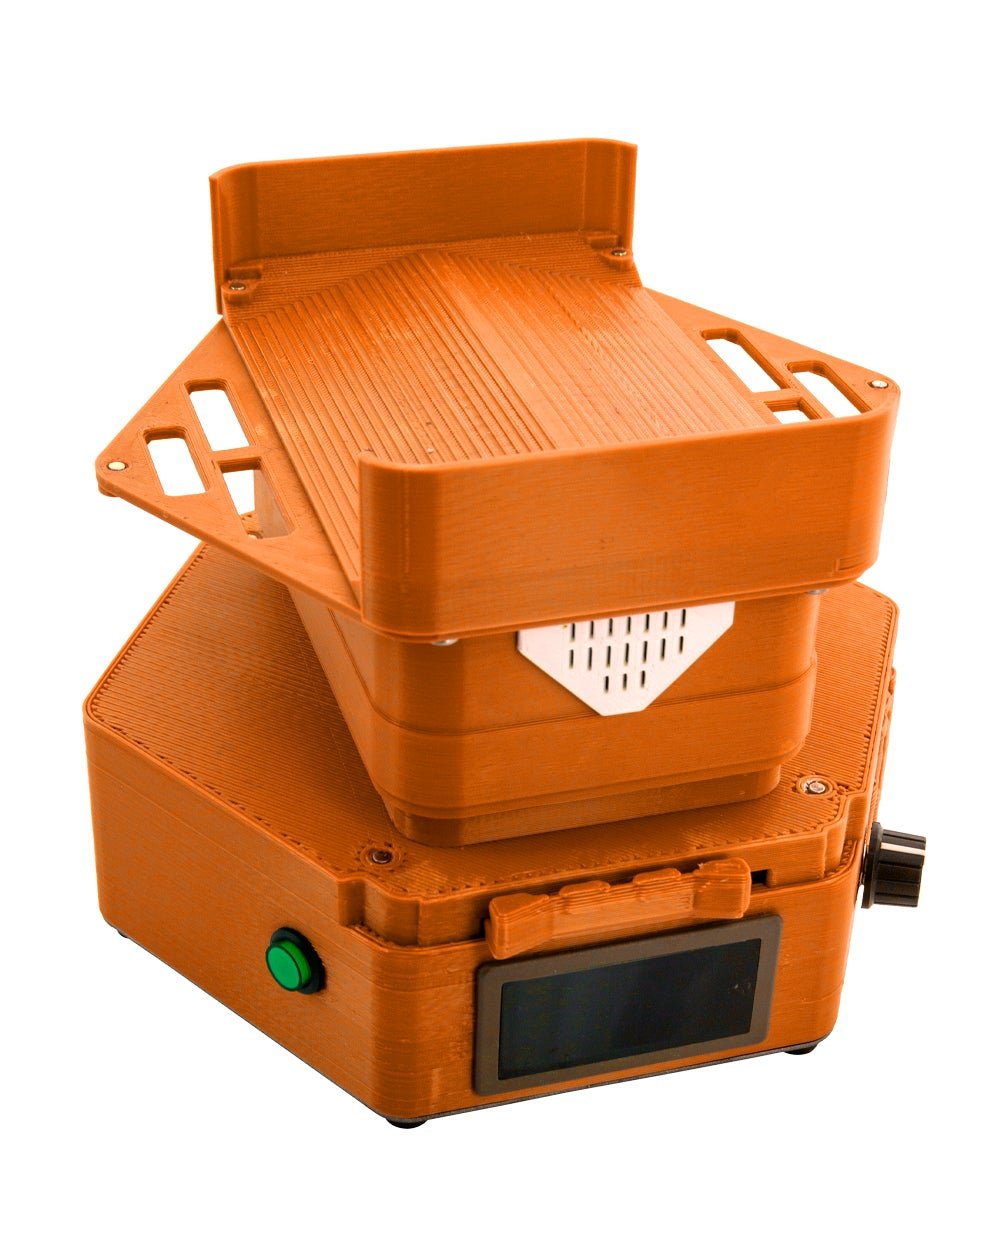 KING KONE | Orange Vibration Pre-Rolled Cones Filling Machine 84/98/109mm | Fill 169 Cones Per Run - 2